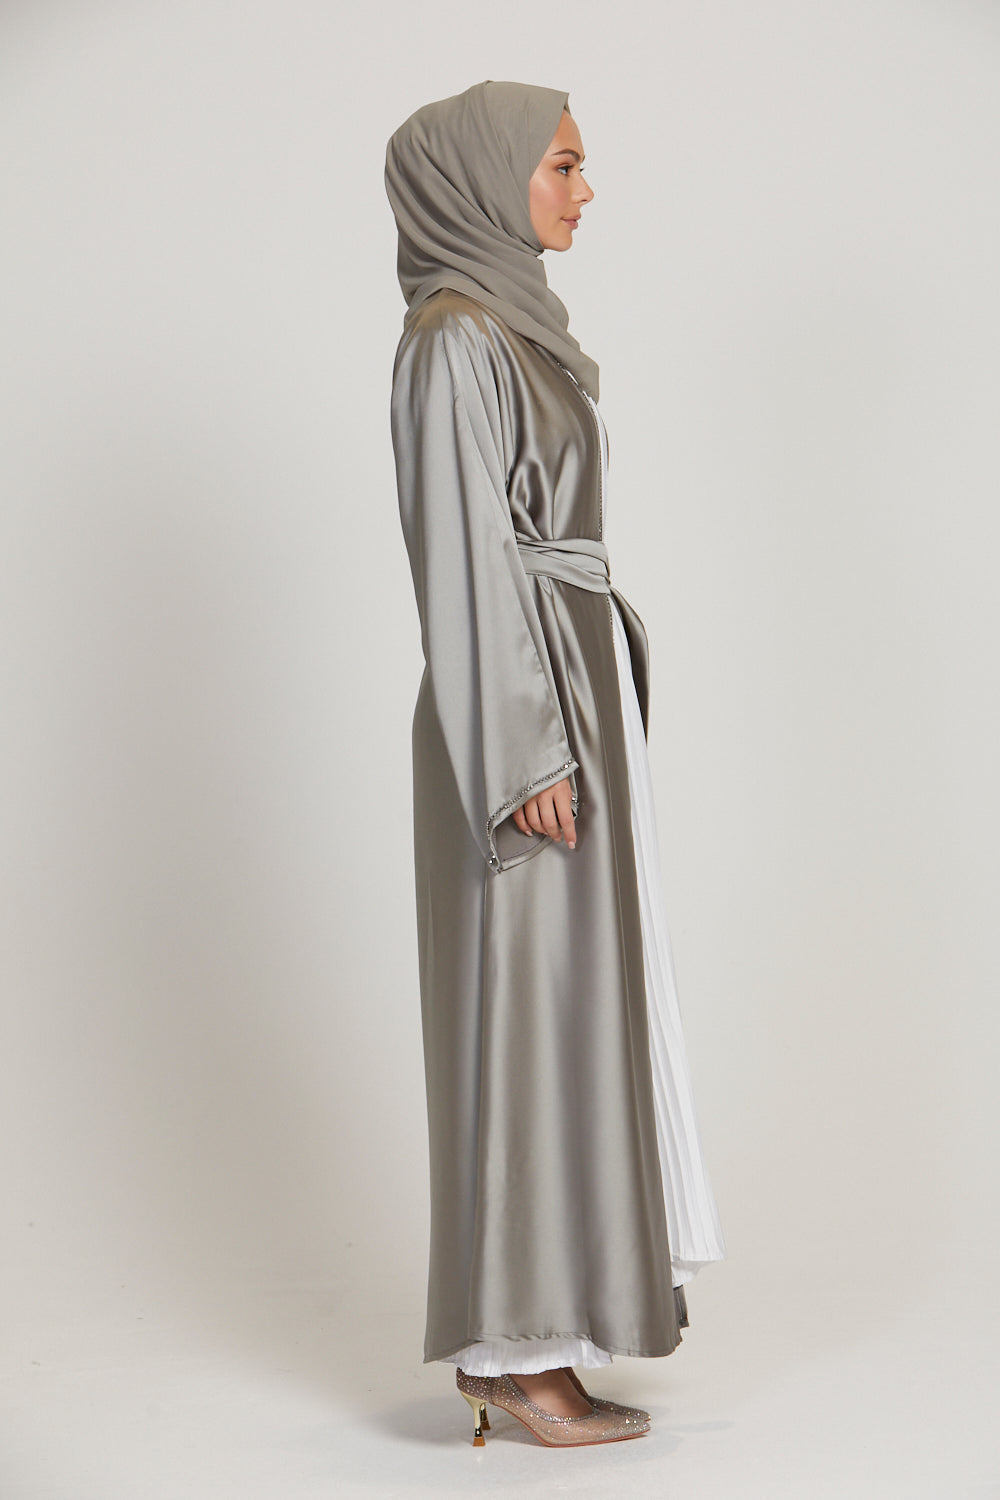 Smokey grey lace open abaya – JanCollection